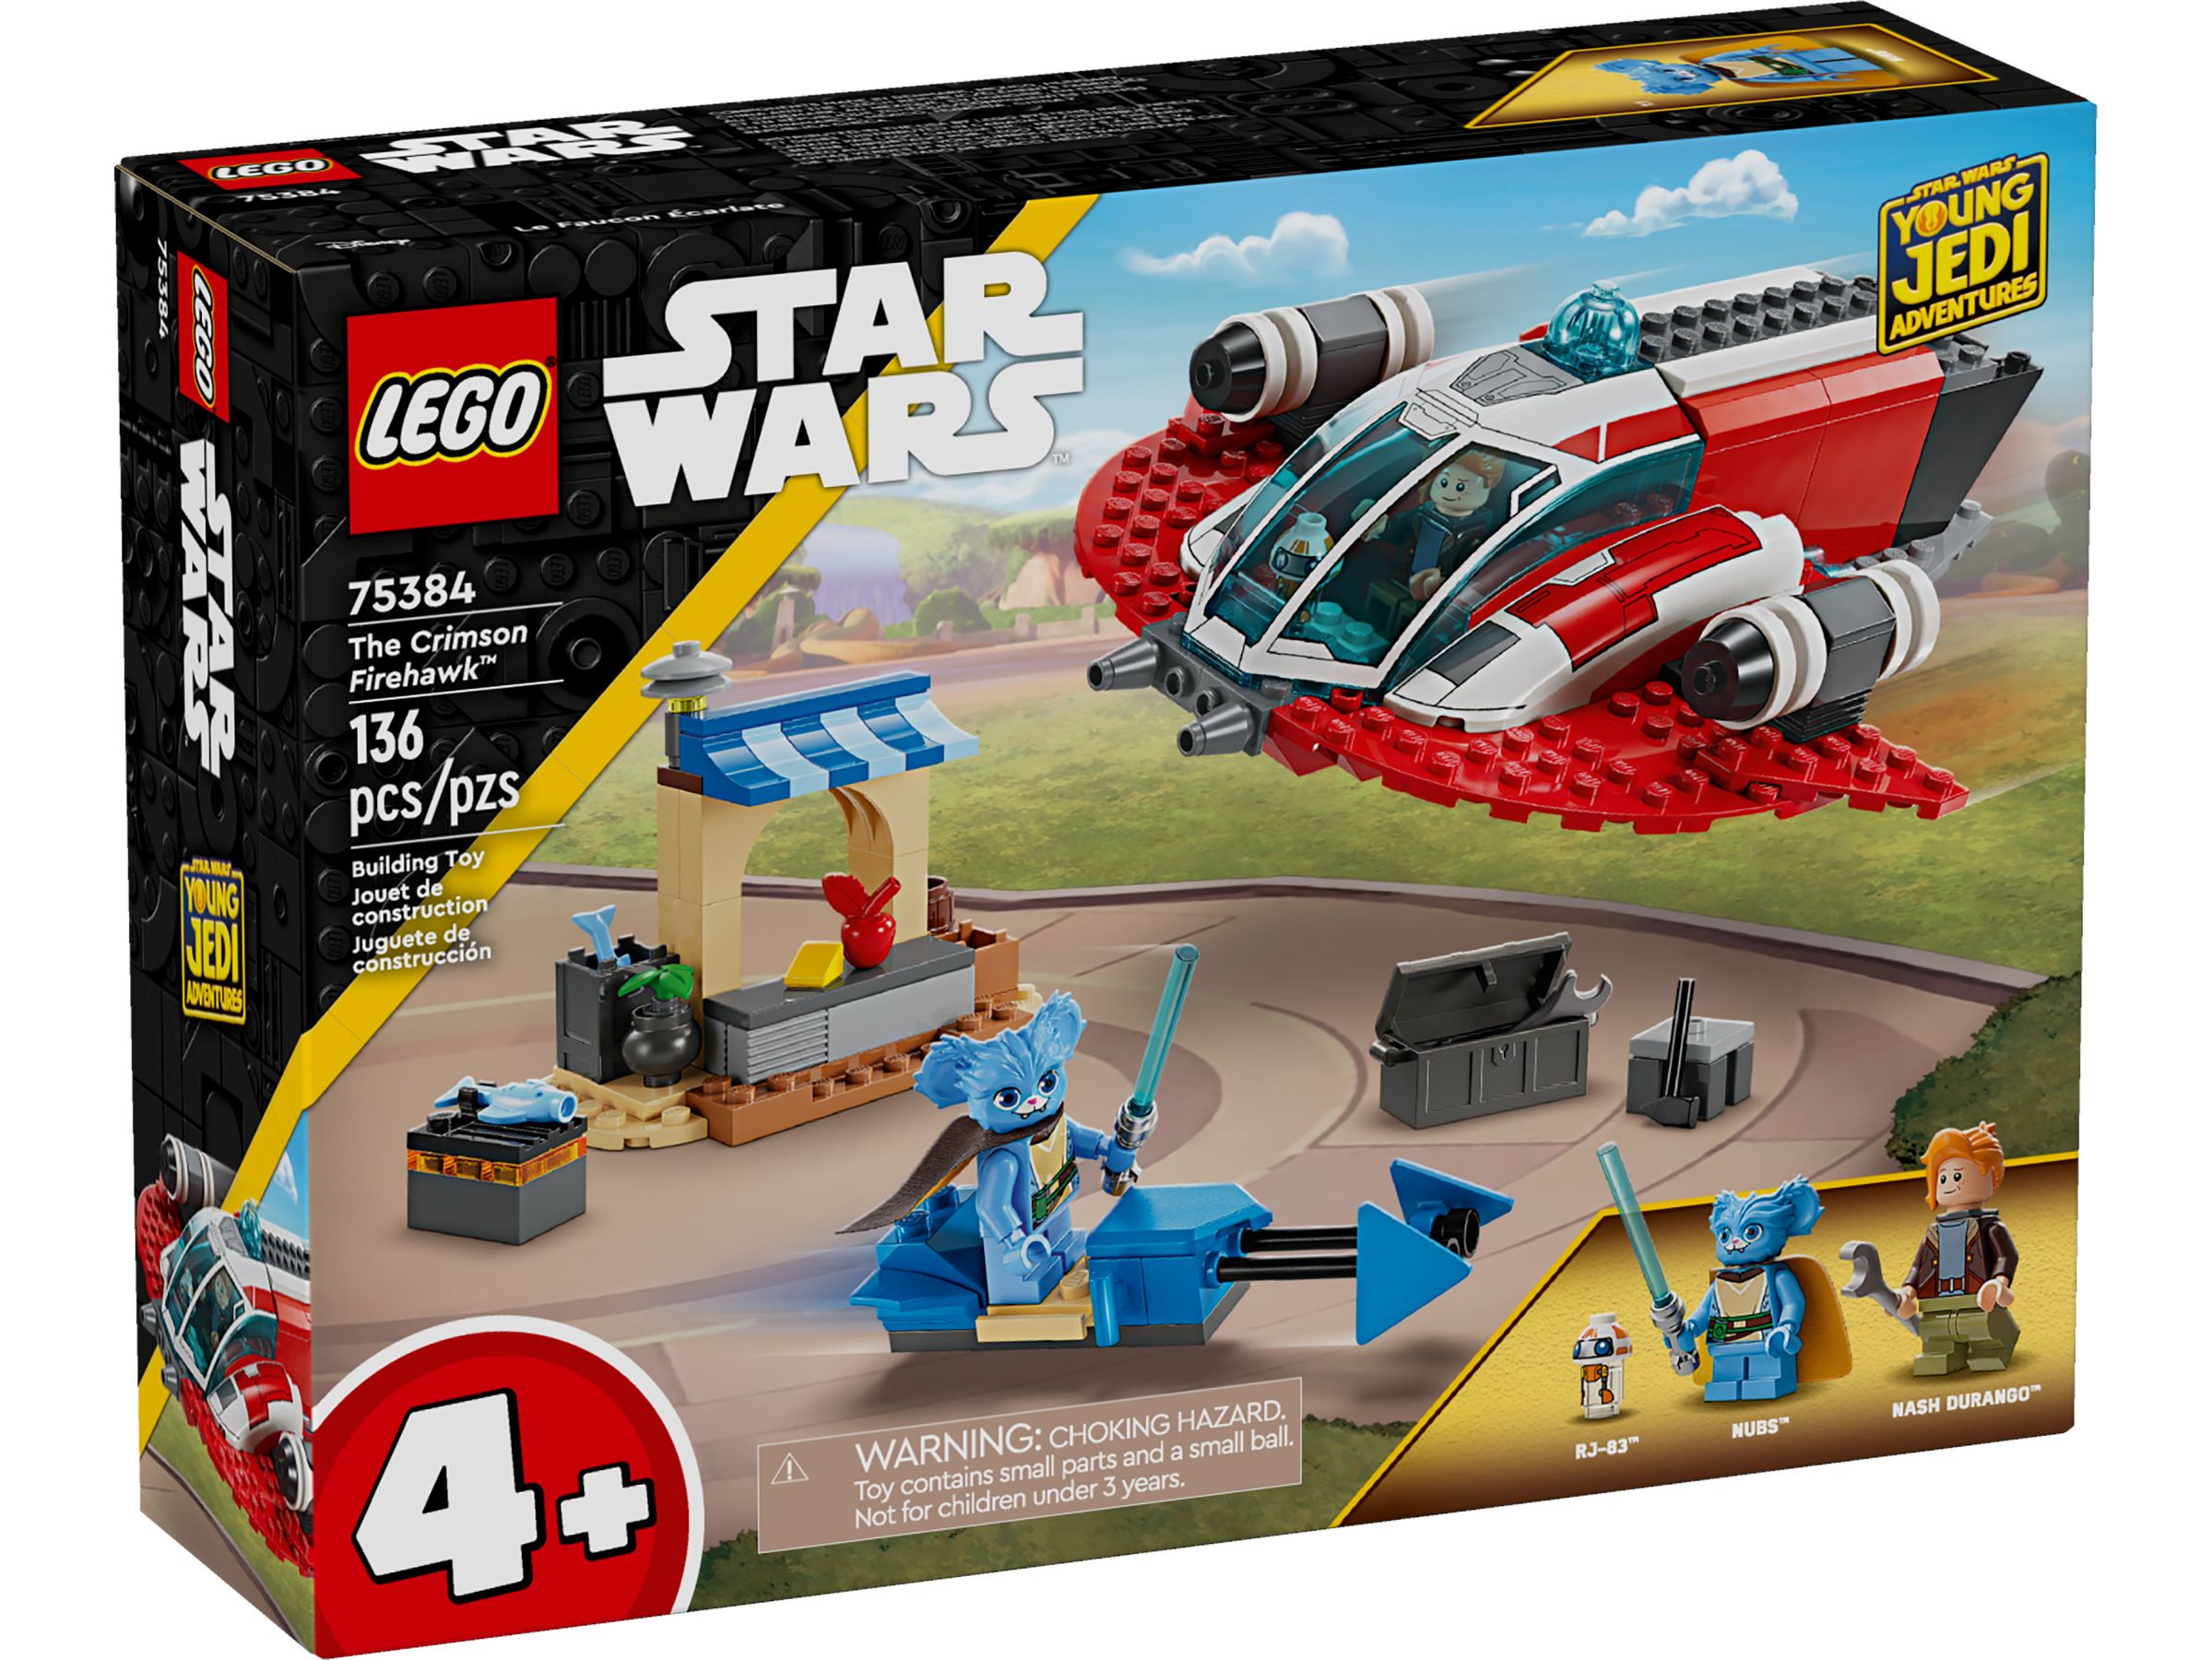 LEGO Star Wars 75384 Der Crimson Firehawk™ LEGO_75384_Box1_v39.jpg